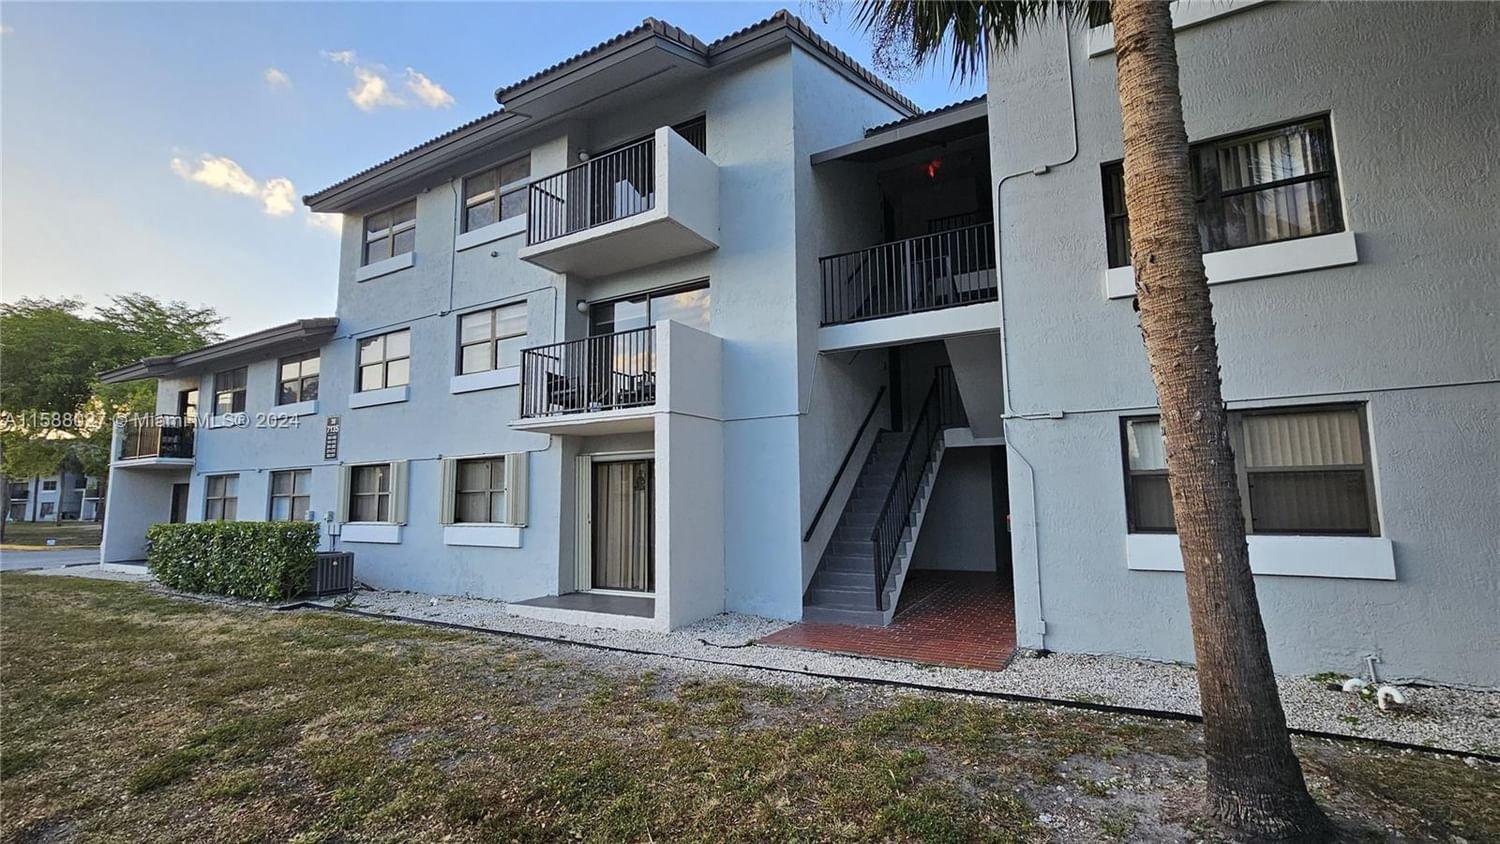 Real estate property located at 7135 179th St #311, Miami-Dade County, VILLA BELLINI CONDO, Hialeah, FL